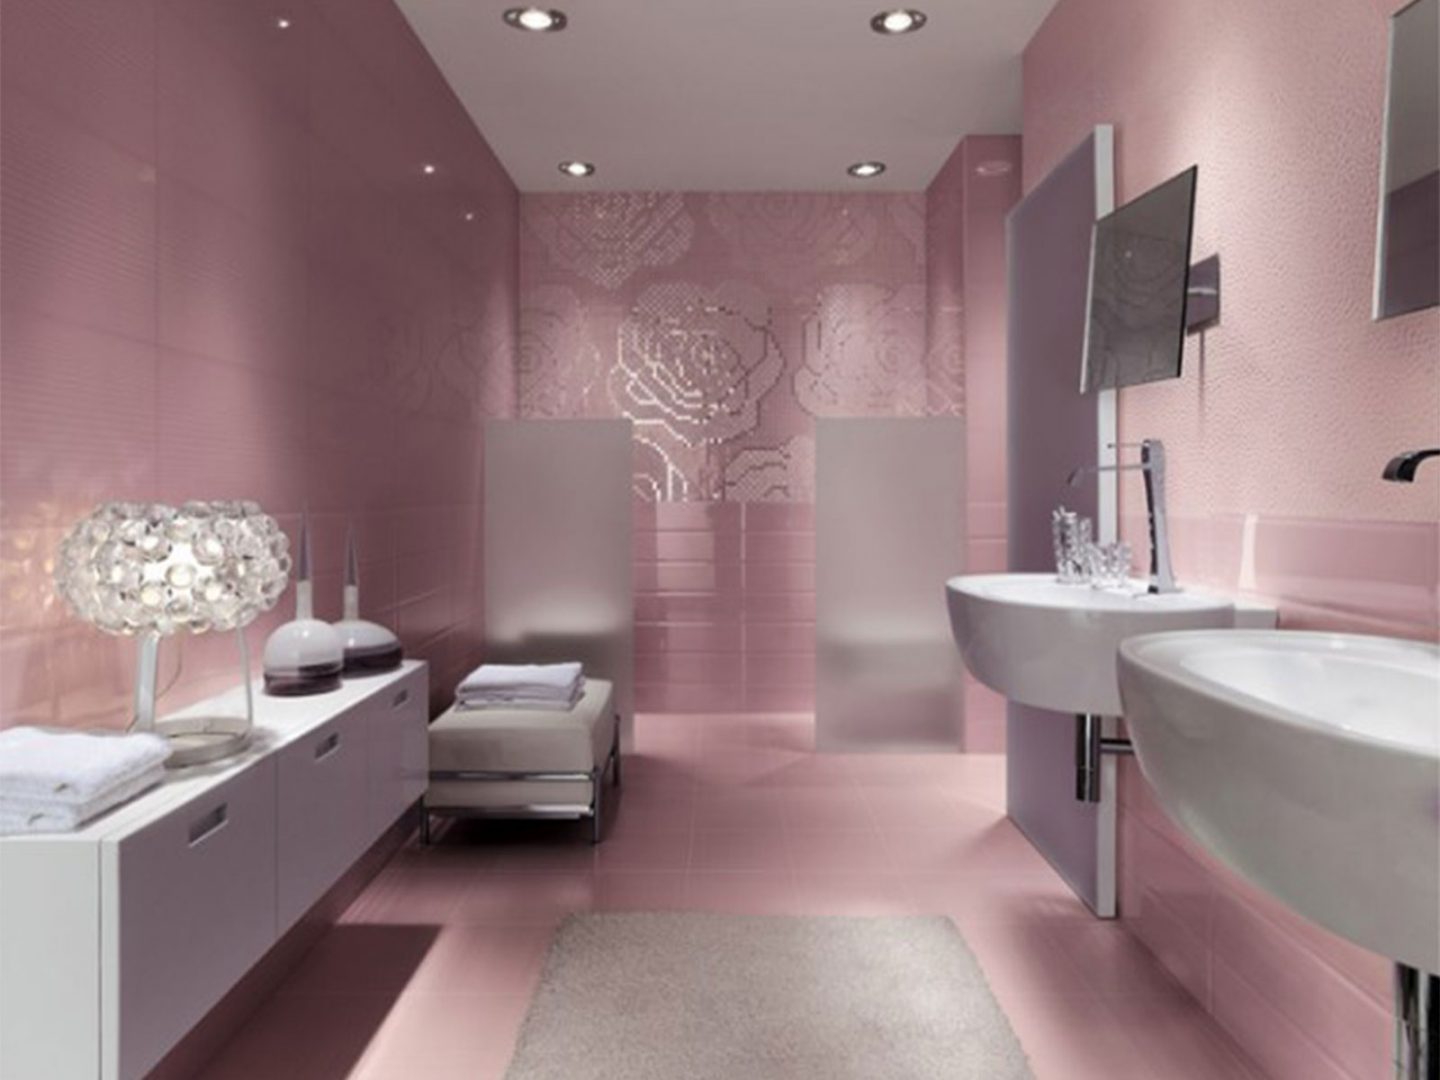 Baño de diseño en color rosa